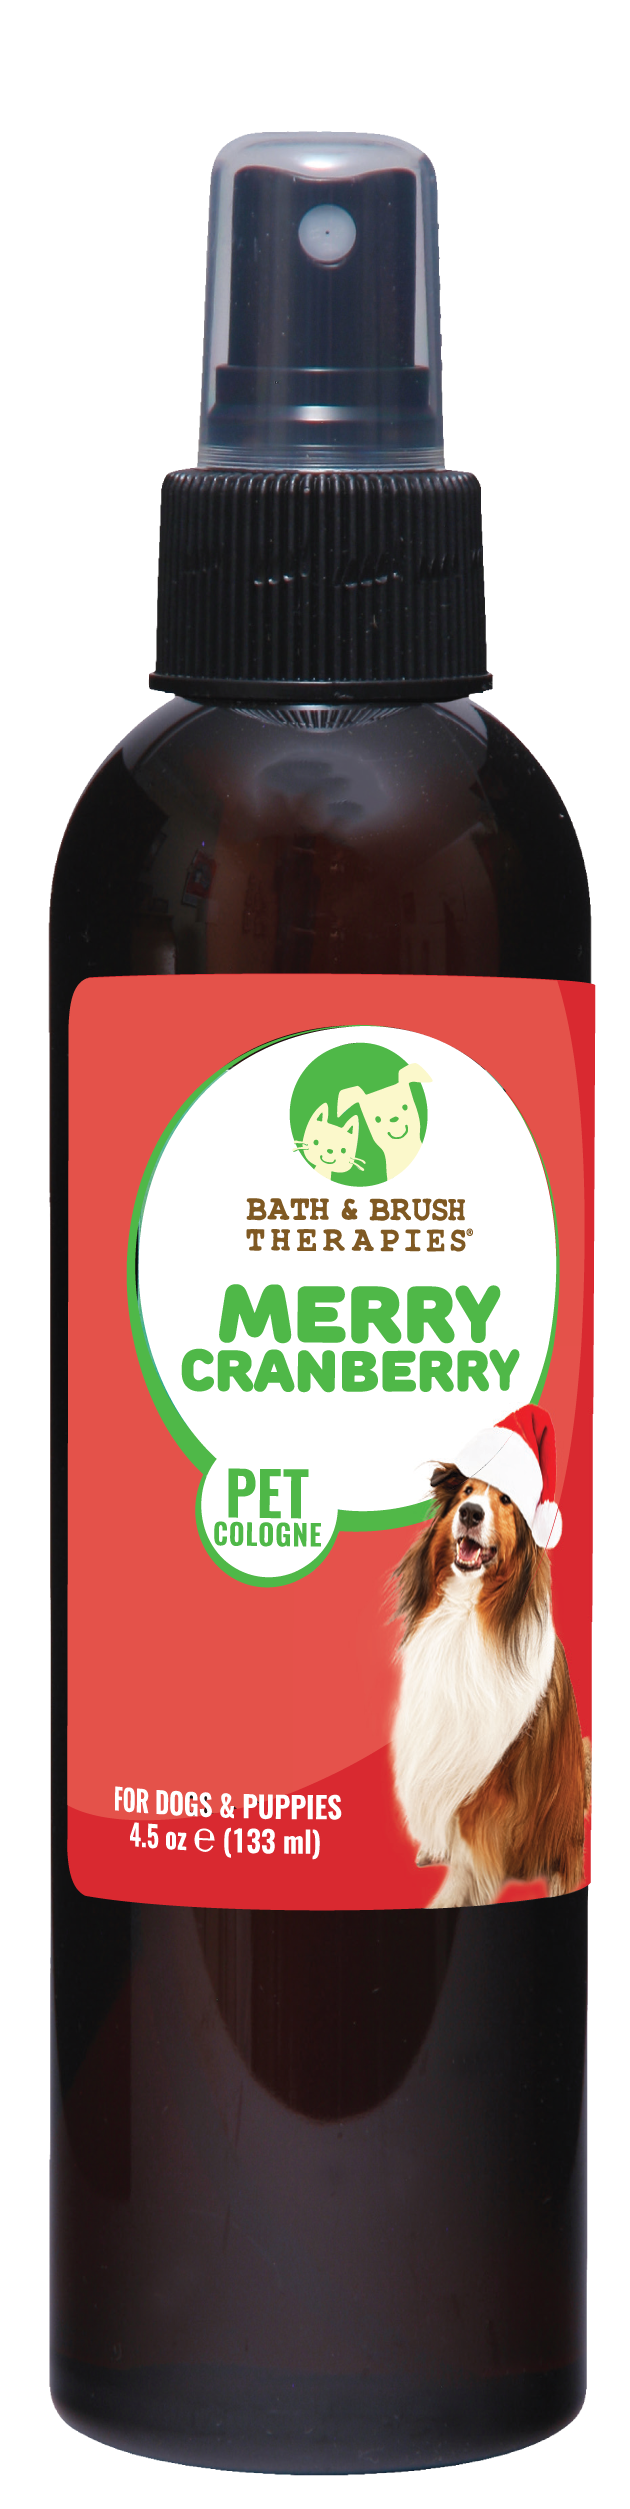 Merry Cranberry Pet Cologne